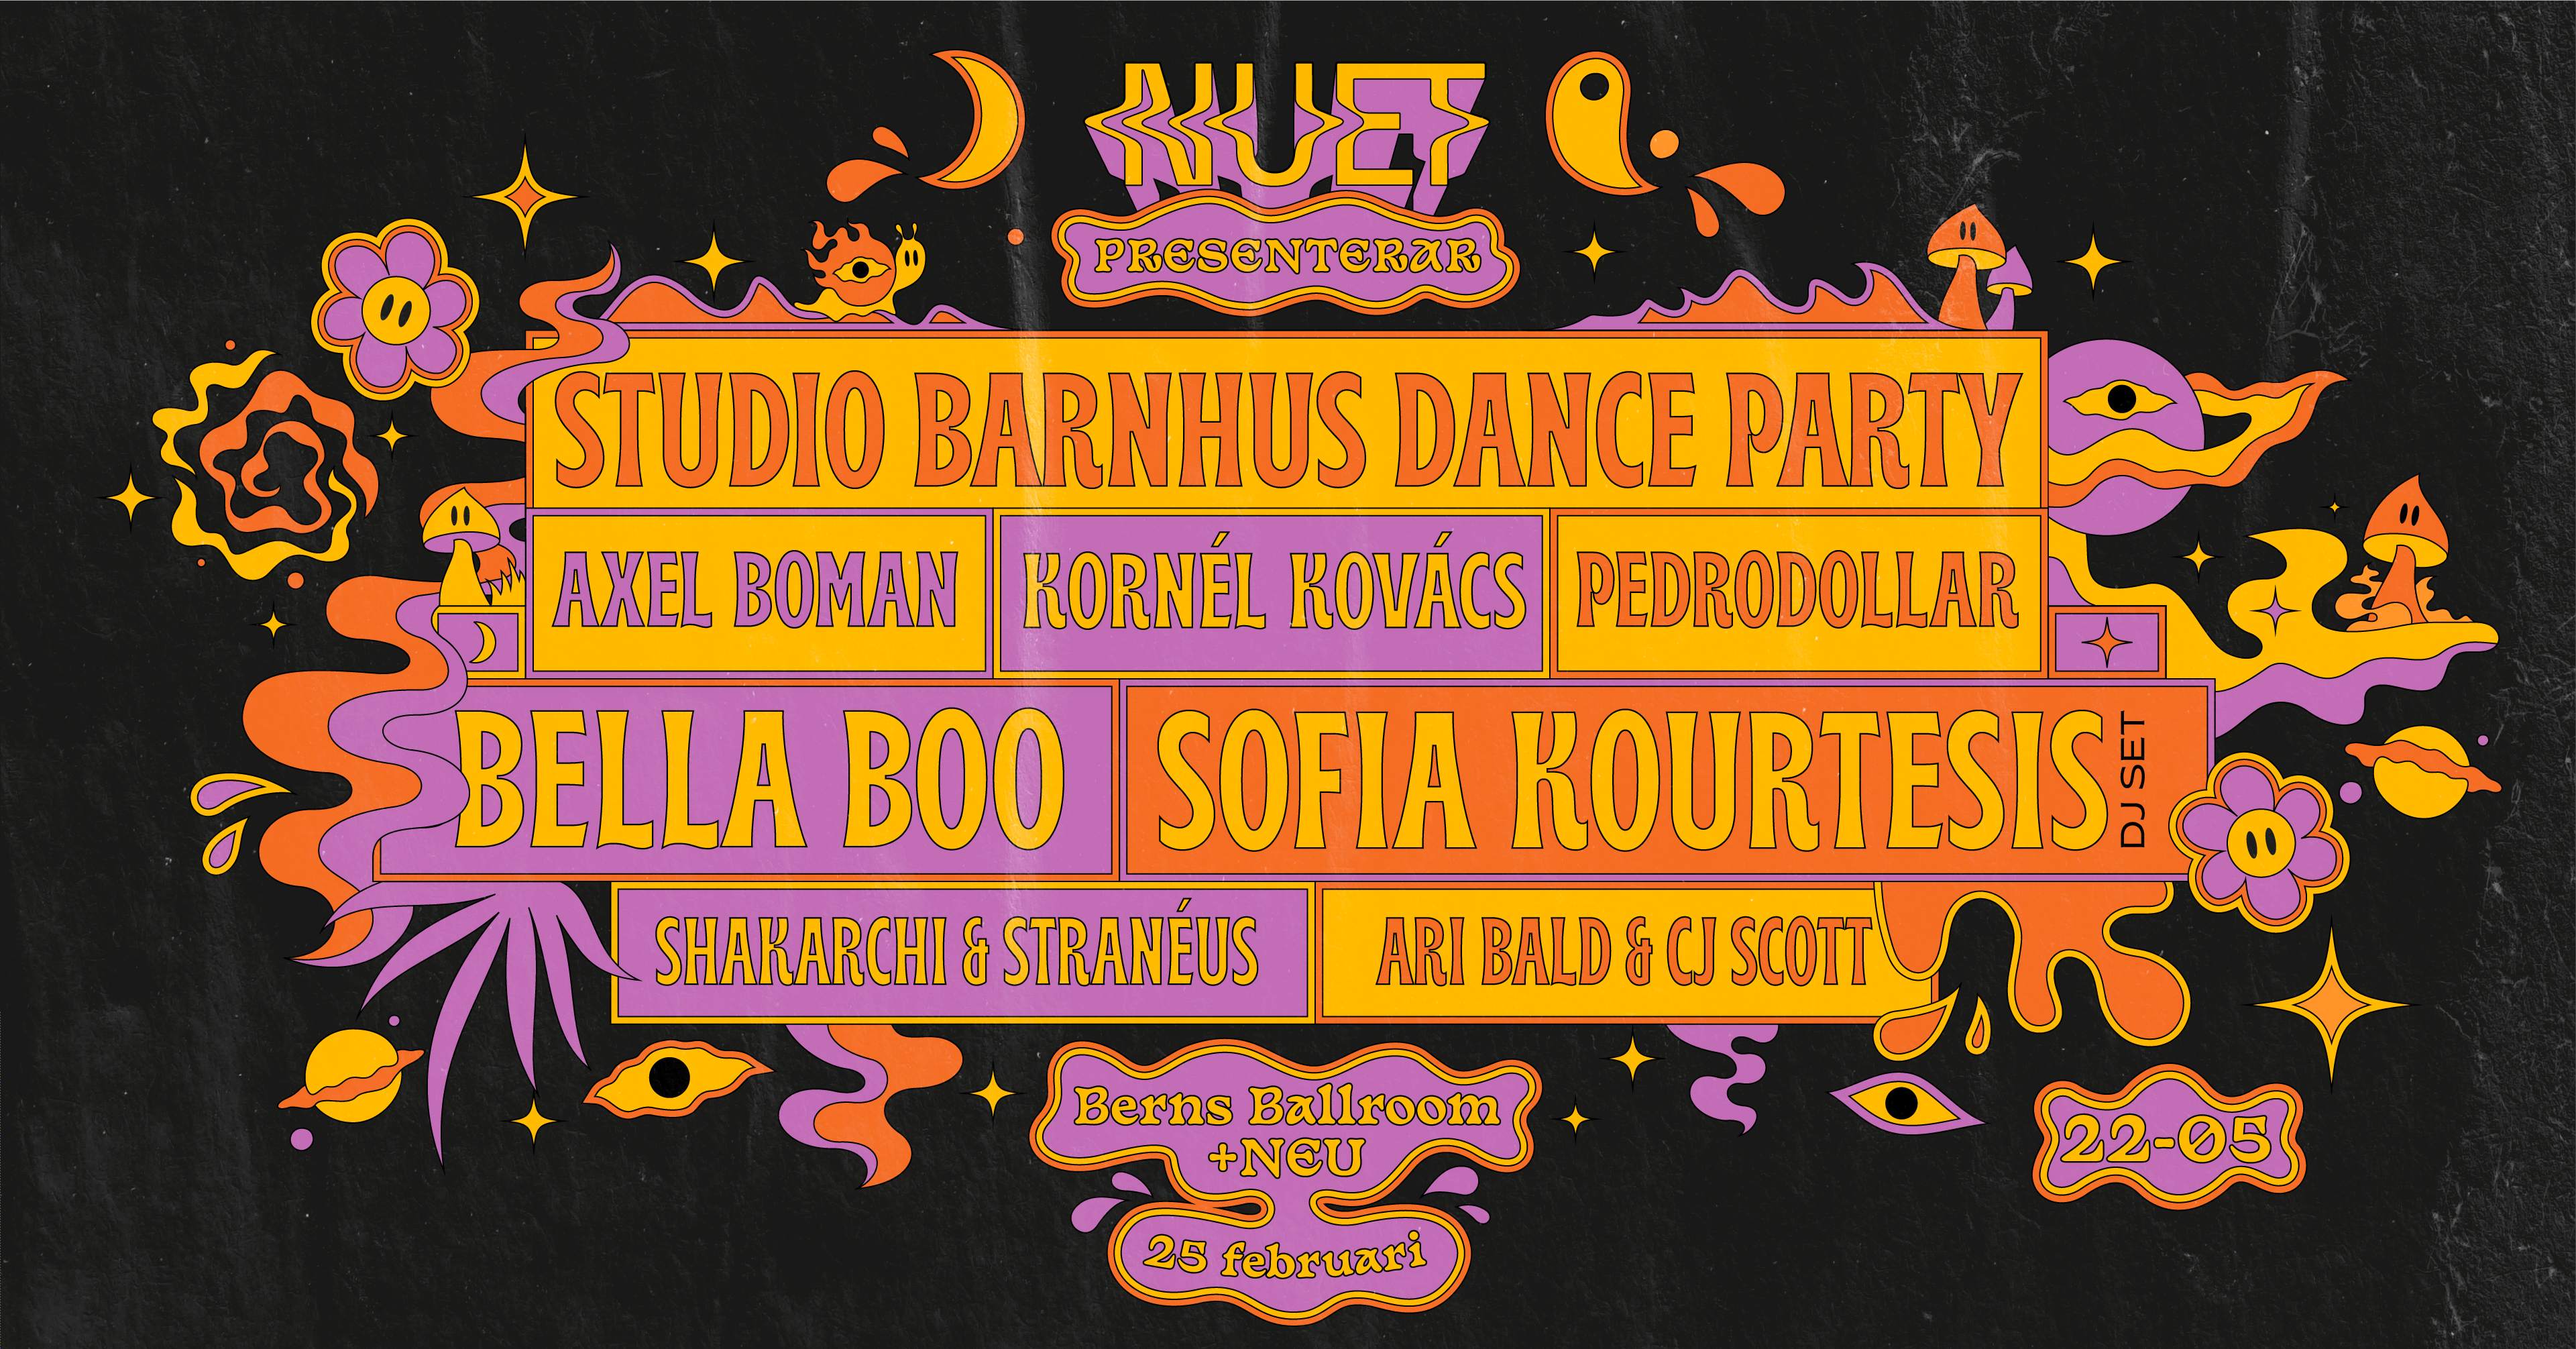 NUET - Studio Barnhus Dance Party - フライヤー表